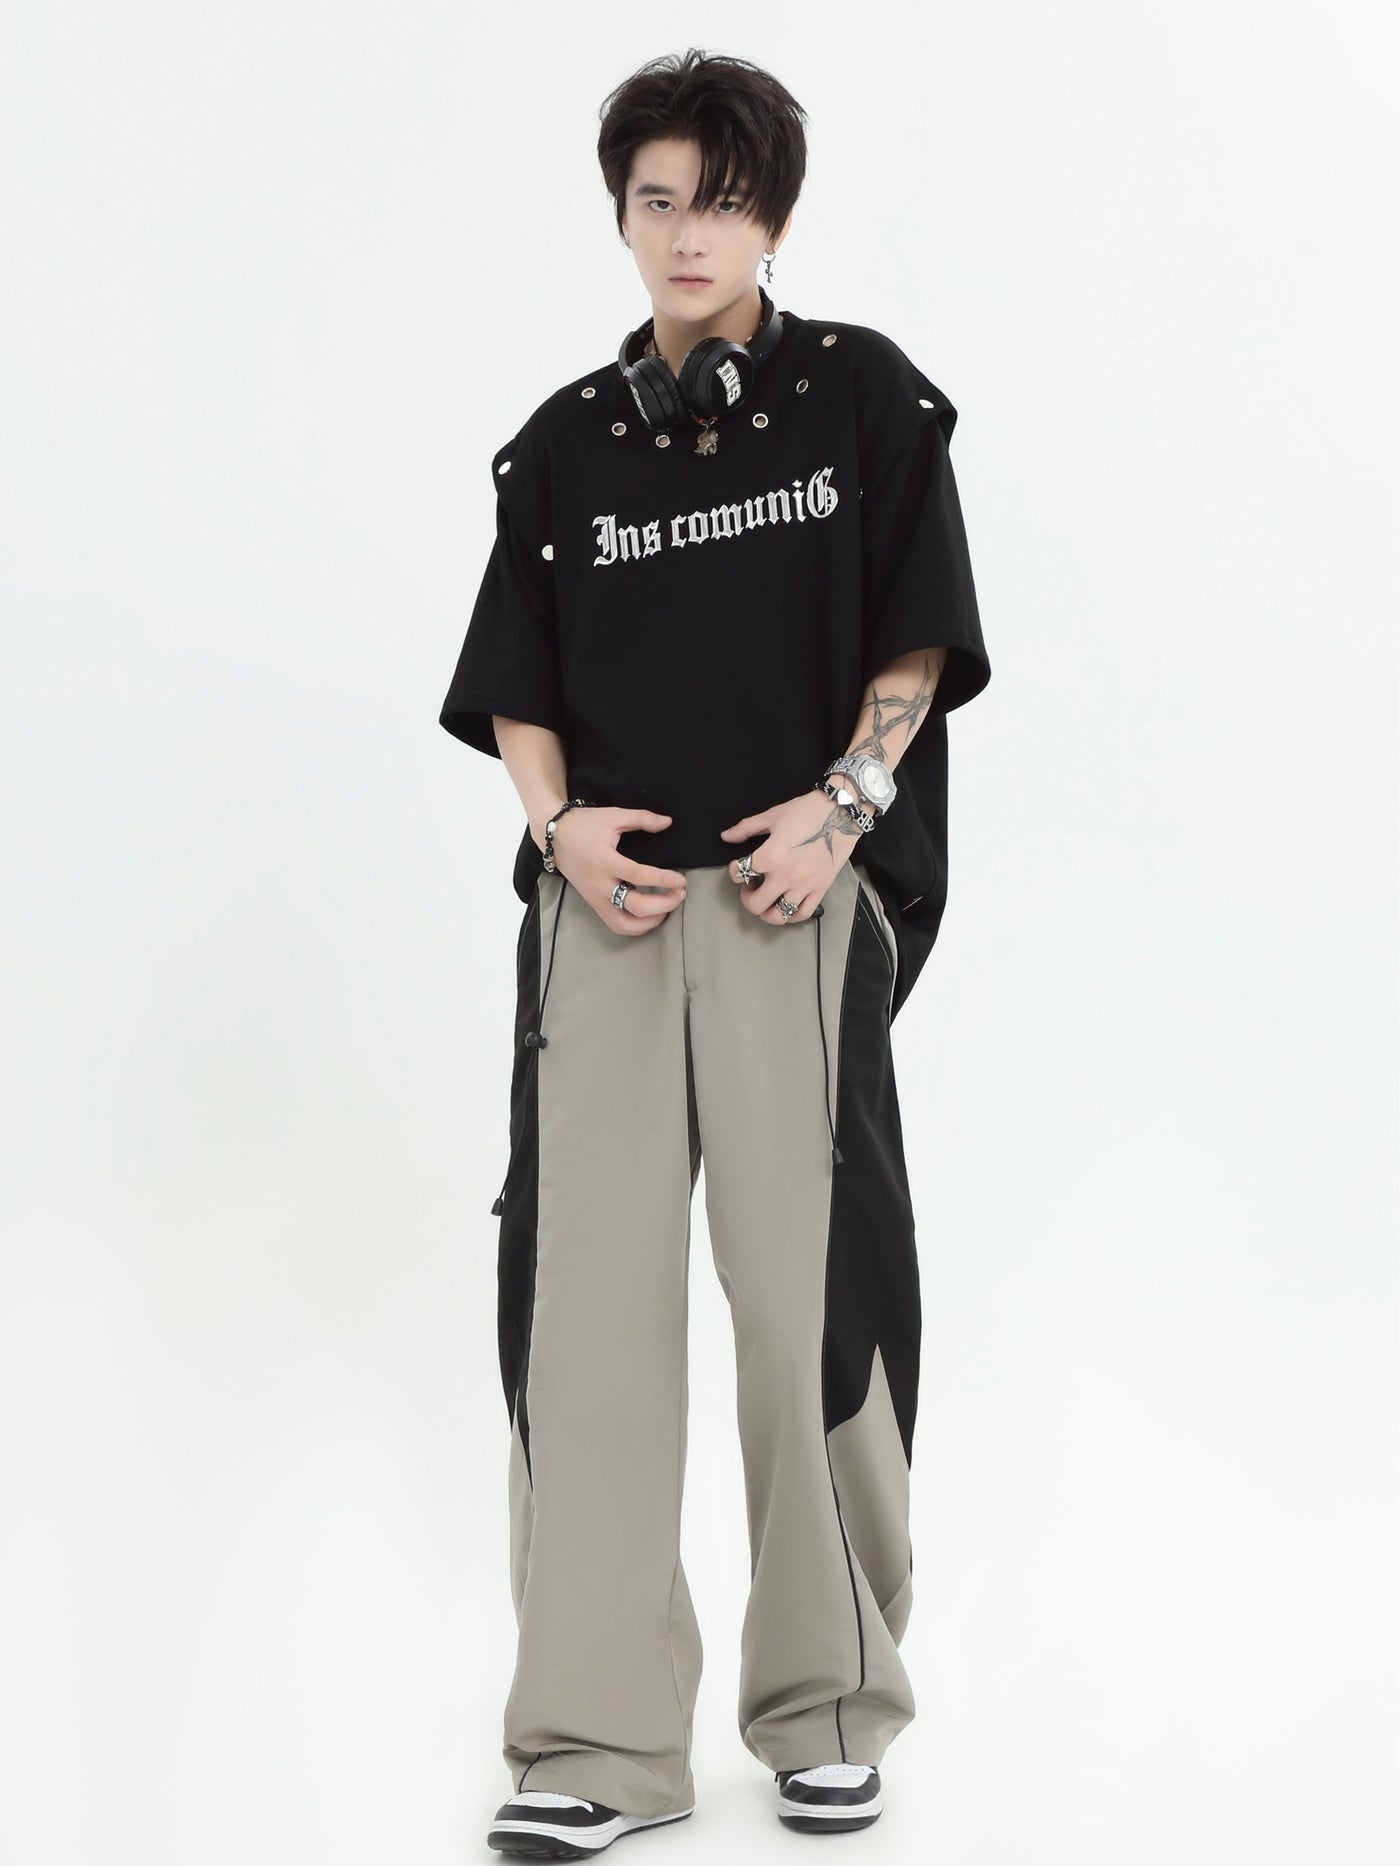 INS Korea Color Block Wide Cut Pants Korean Street Fashion Pants By INS Korea Shop Online at OH Vault